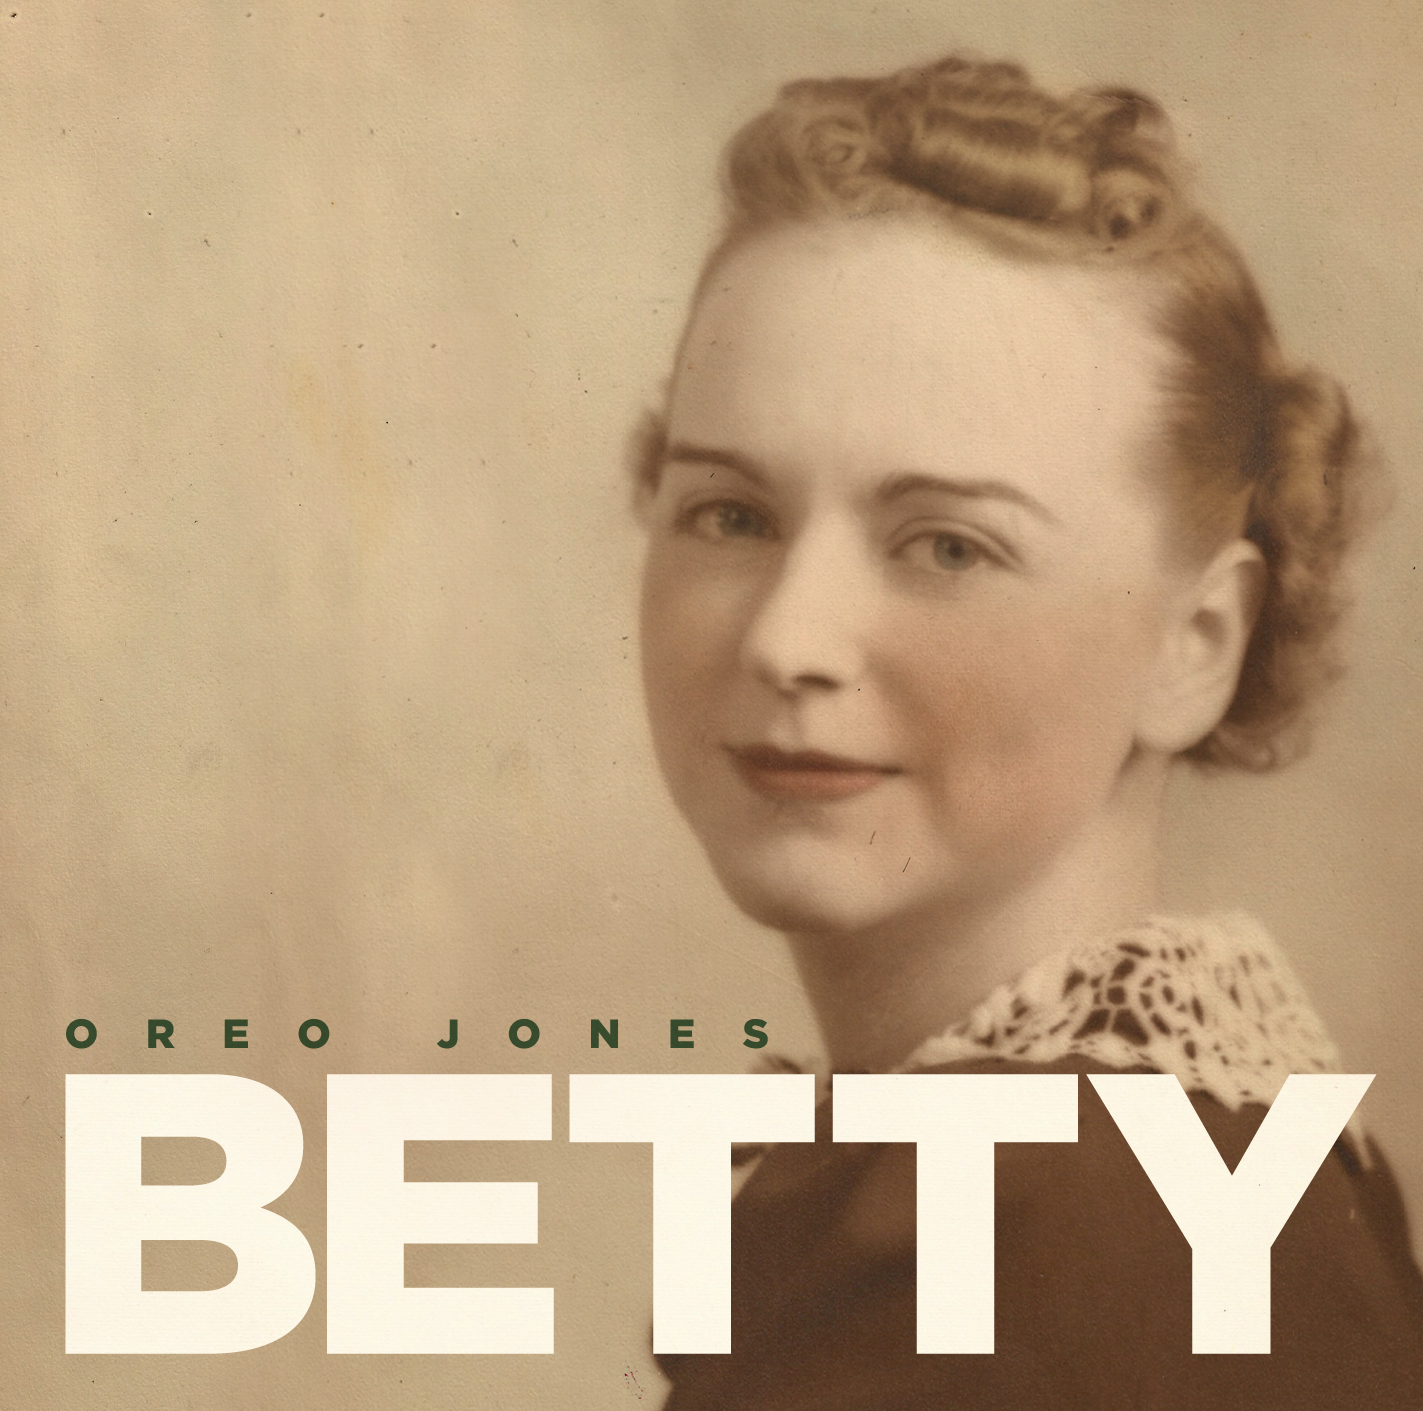 Oreo Jones - "Betty" (Release)